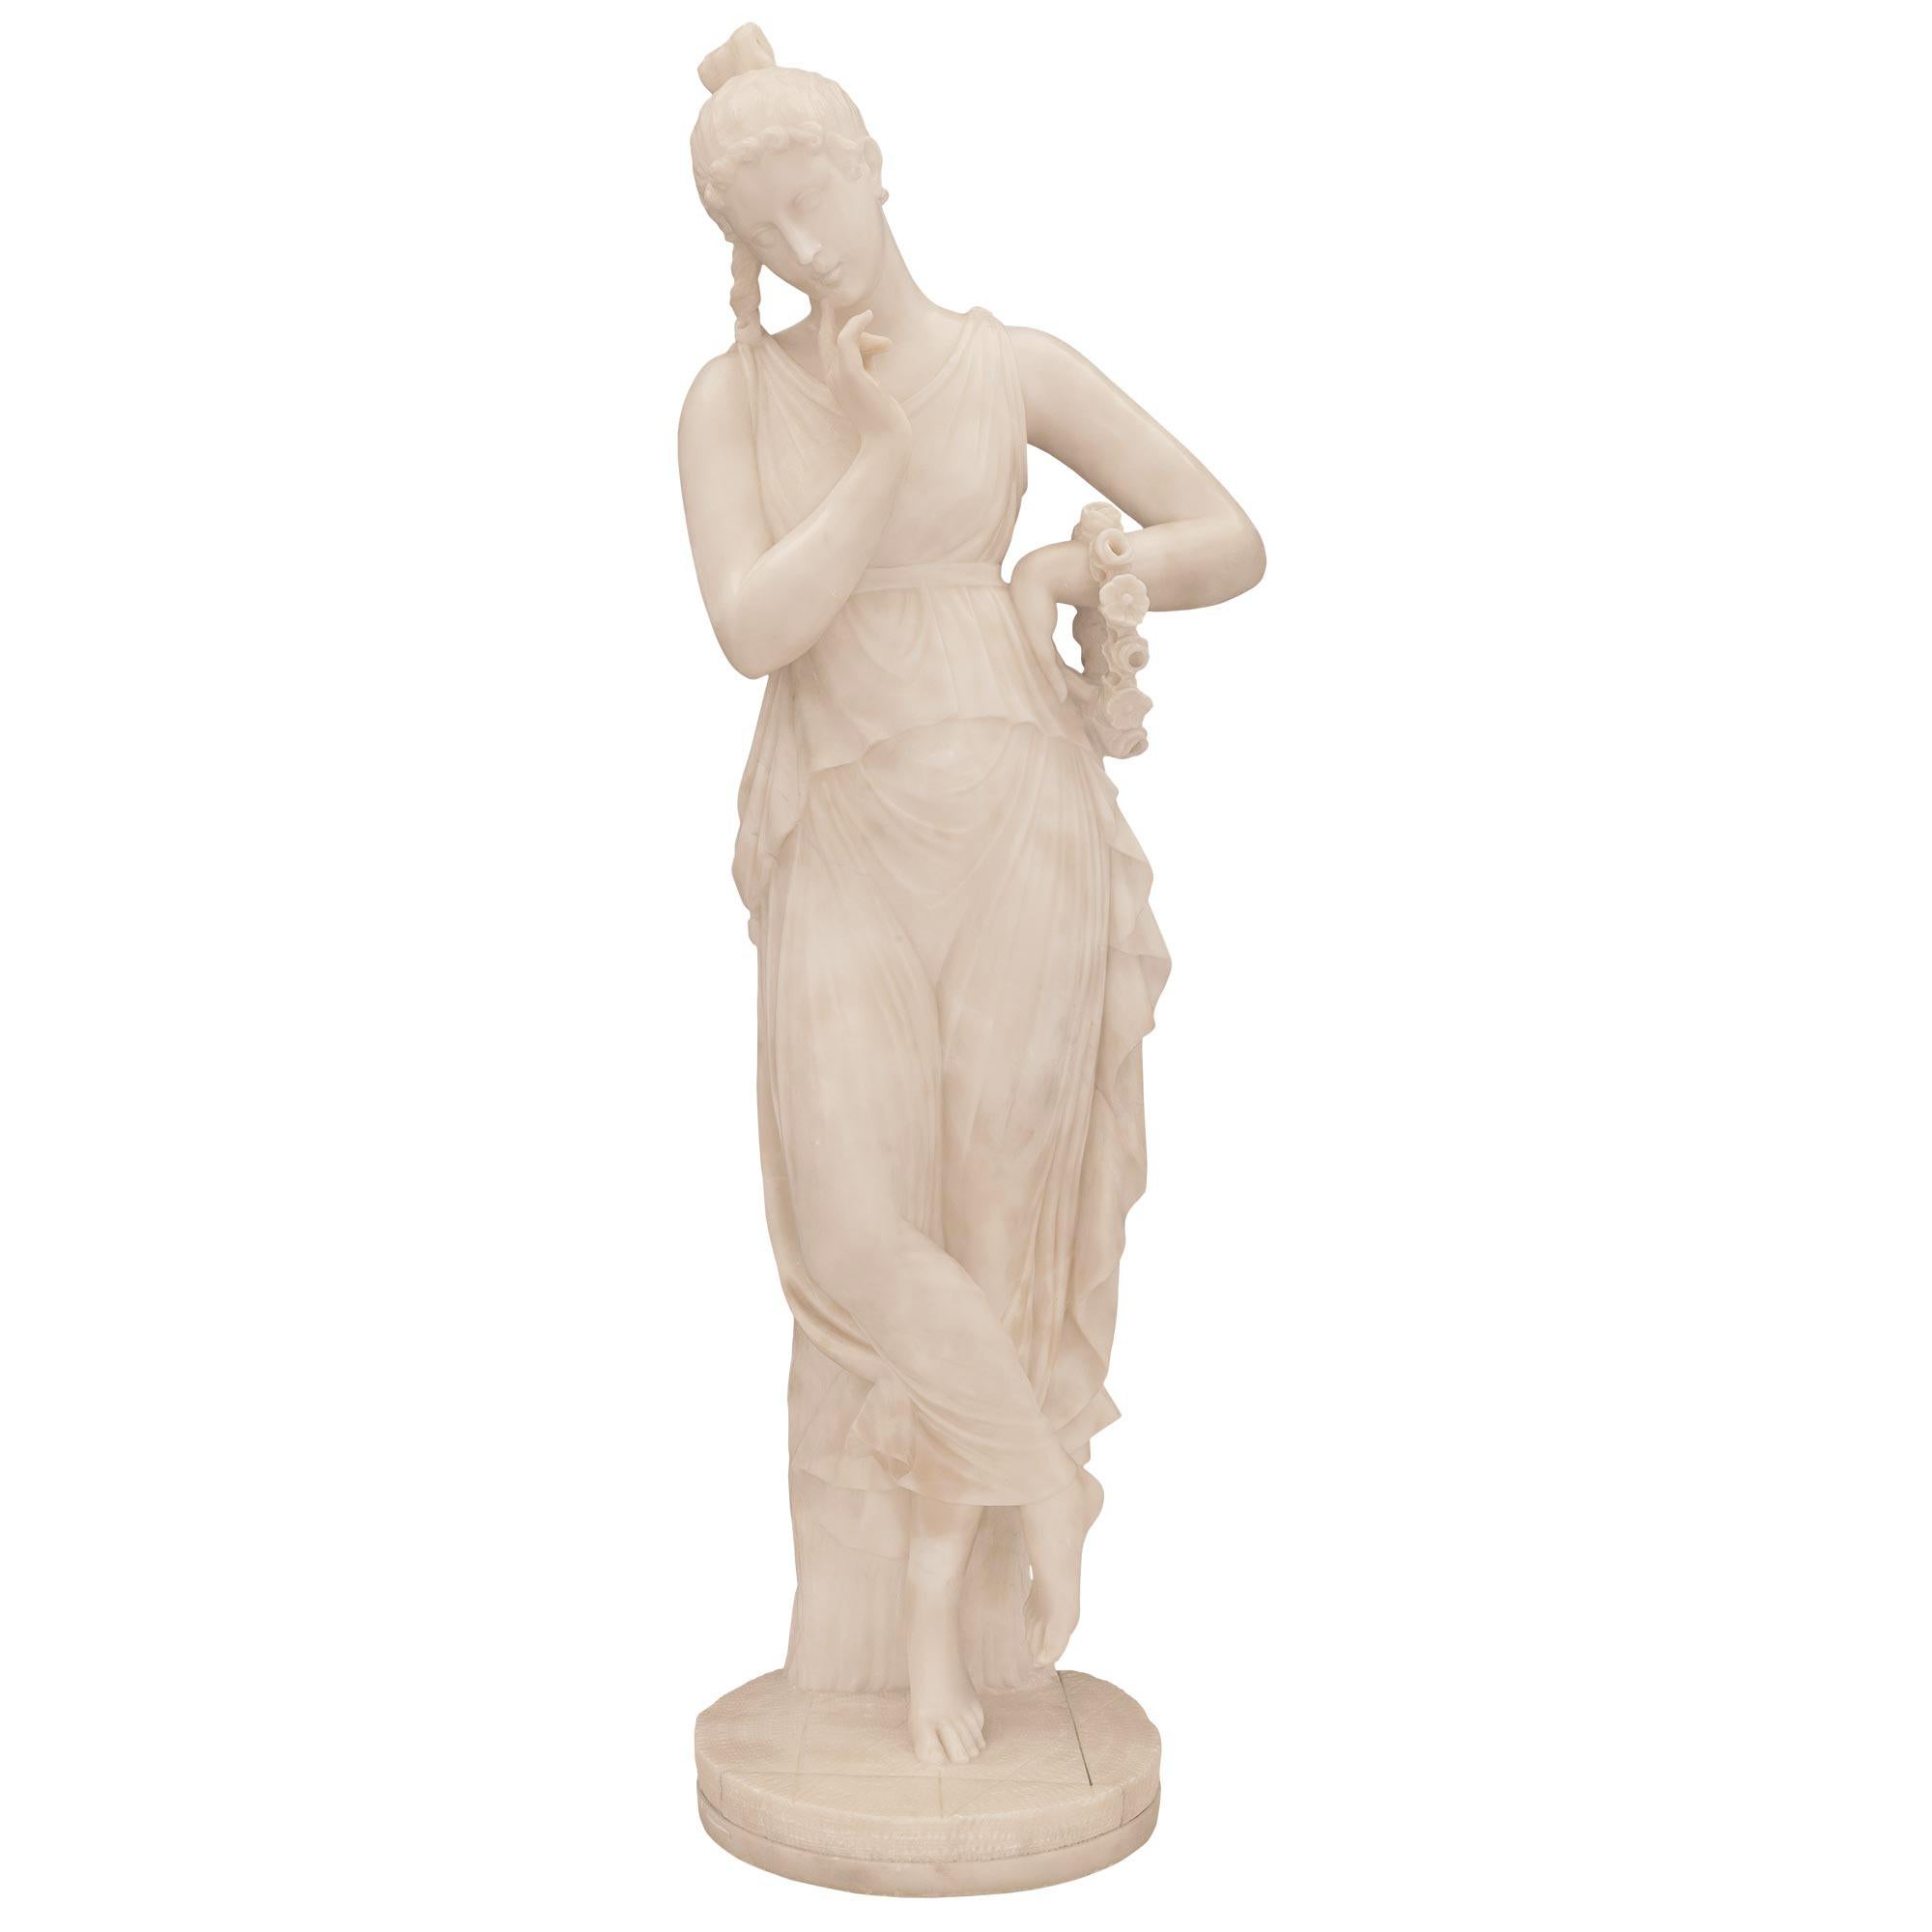 Remarquable statue italienne en albâtre du XIXe siècle représentant une belle jeune fille d'après un modèle d'Antonio Canova. La statue est surélevée par une base circulaire avec un motif de sol très décoratif où la jeune fille merveilleusement